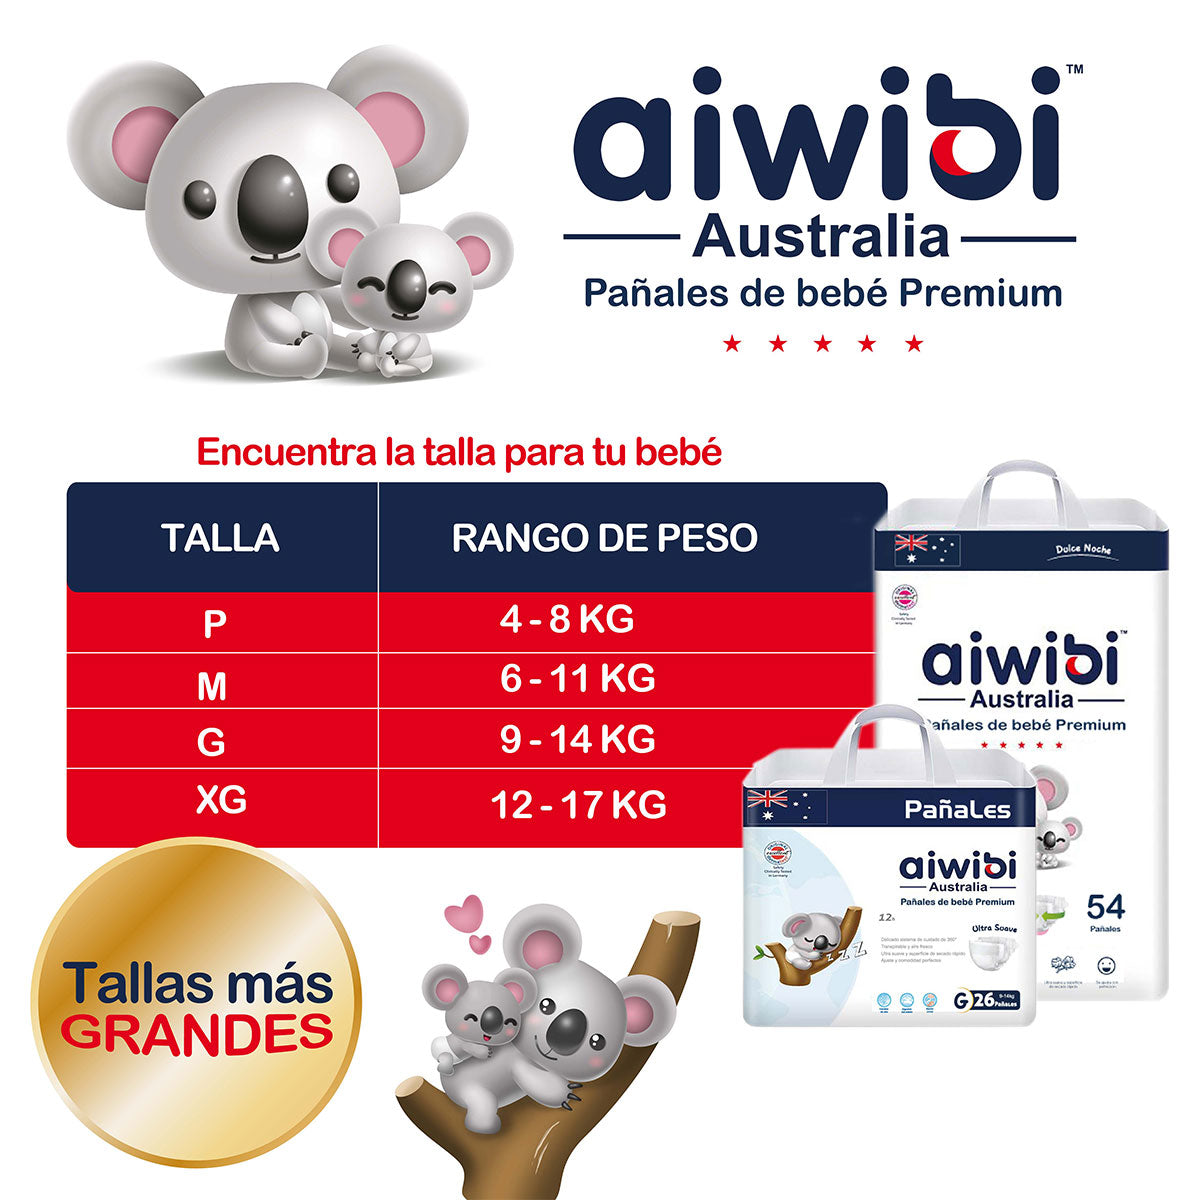 Pañales Aiwibi Premium G (26 unidades) - 🇦🇺 Producto Australiano